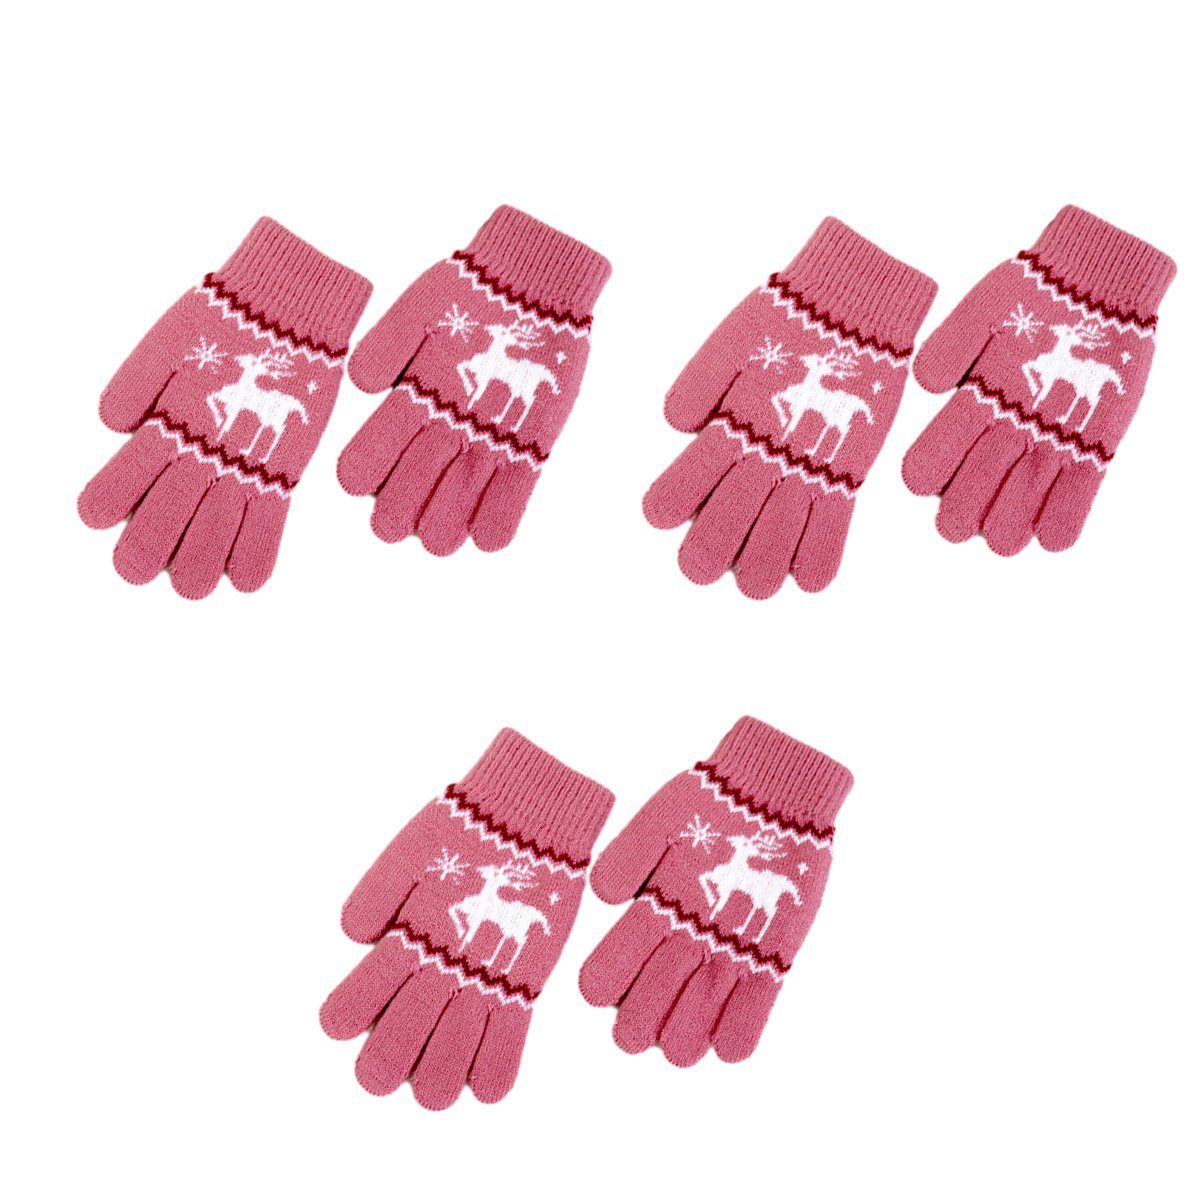 ZmdecQna Strickhandschuhe 3 Paar Handschuhe für Kinder,Winterthermische Handschuhe Vollfinger Rosa